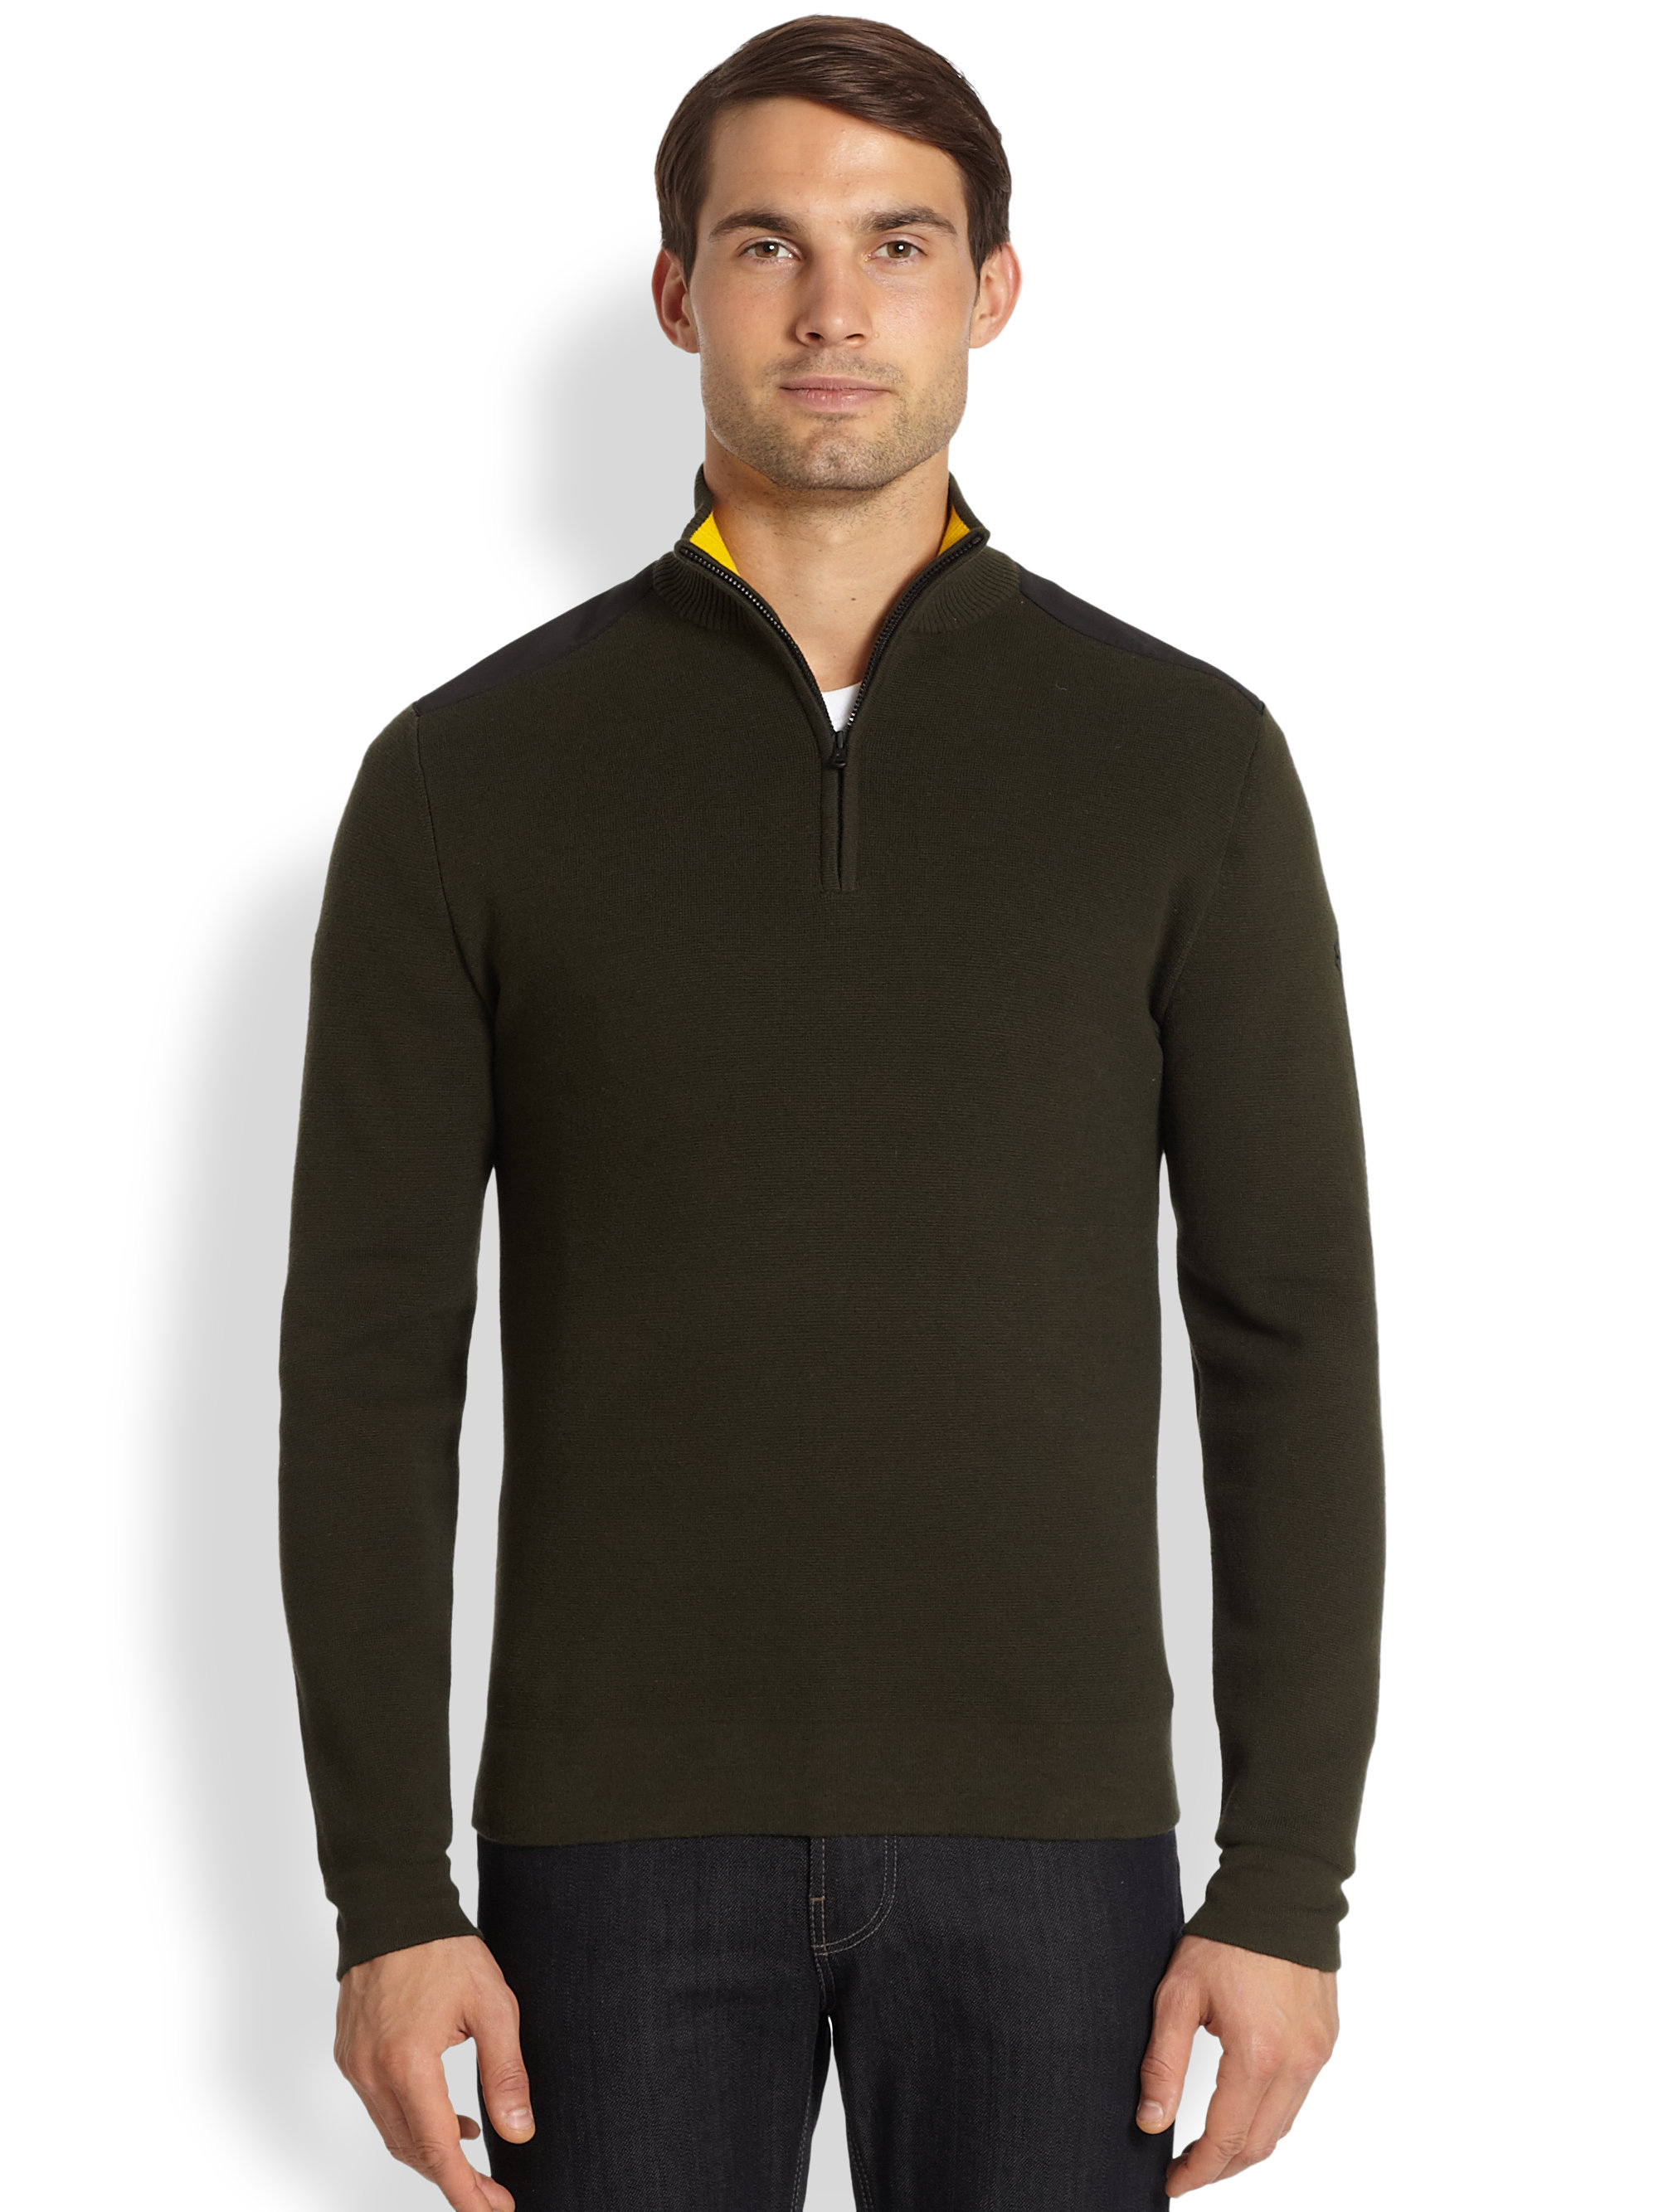 Men's Clothing & Accessories: Victorinox Men's Sweaters